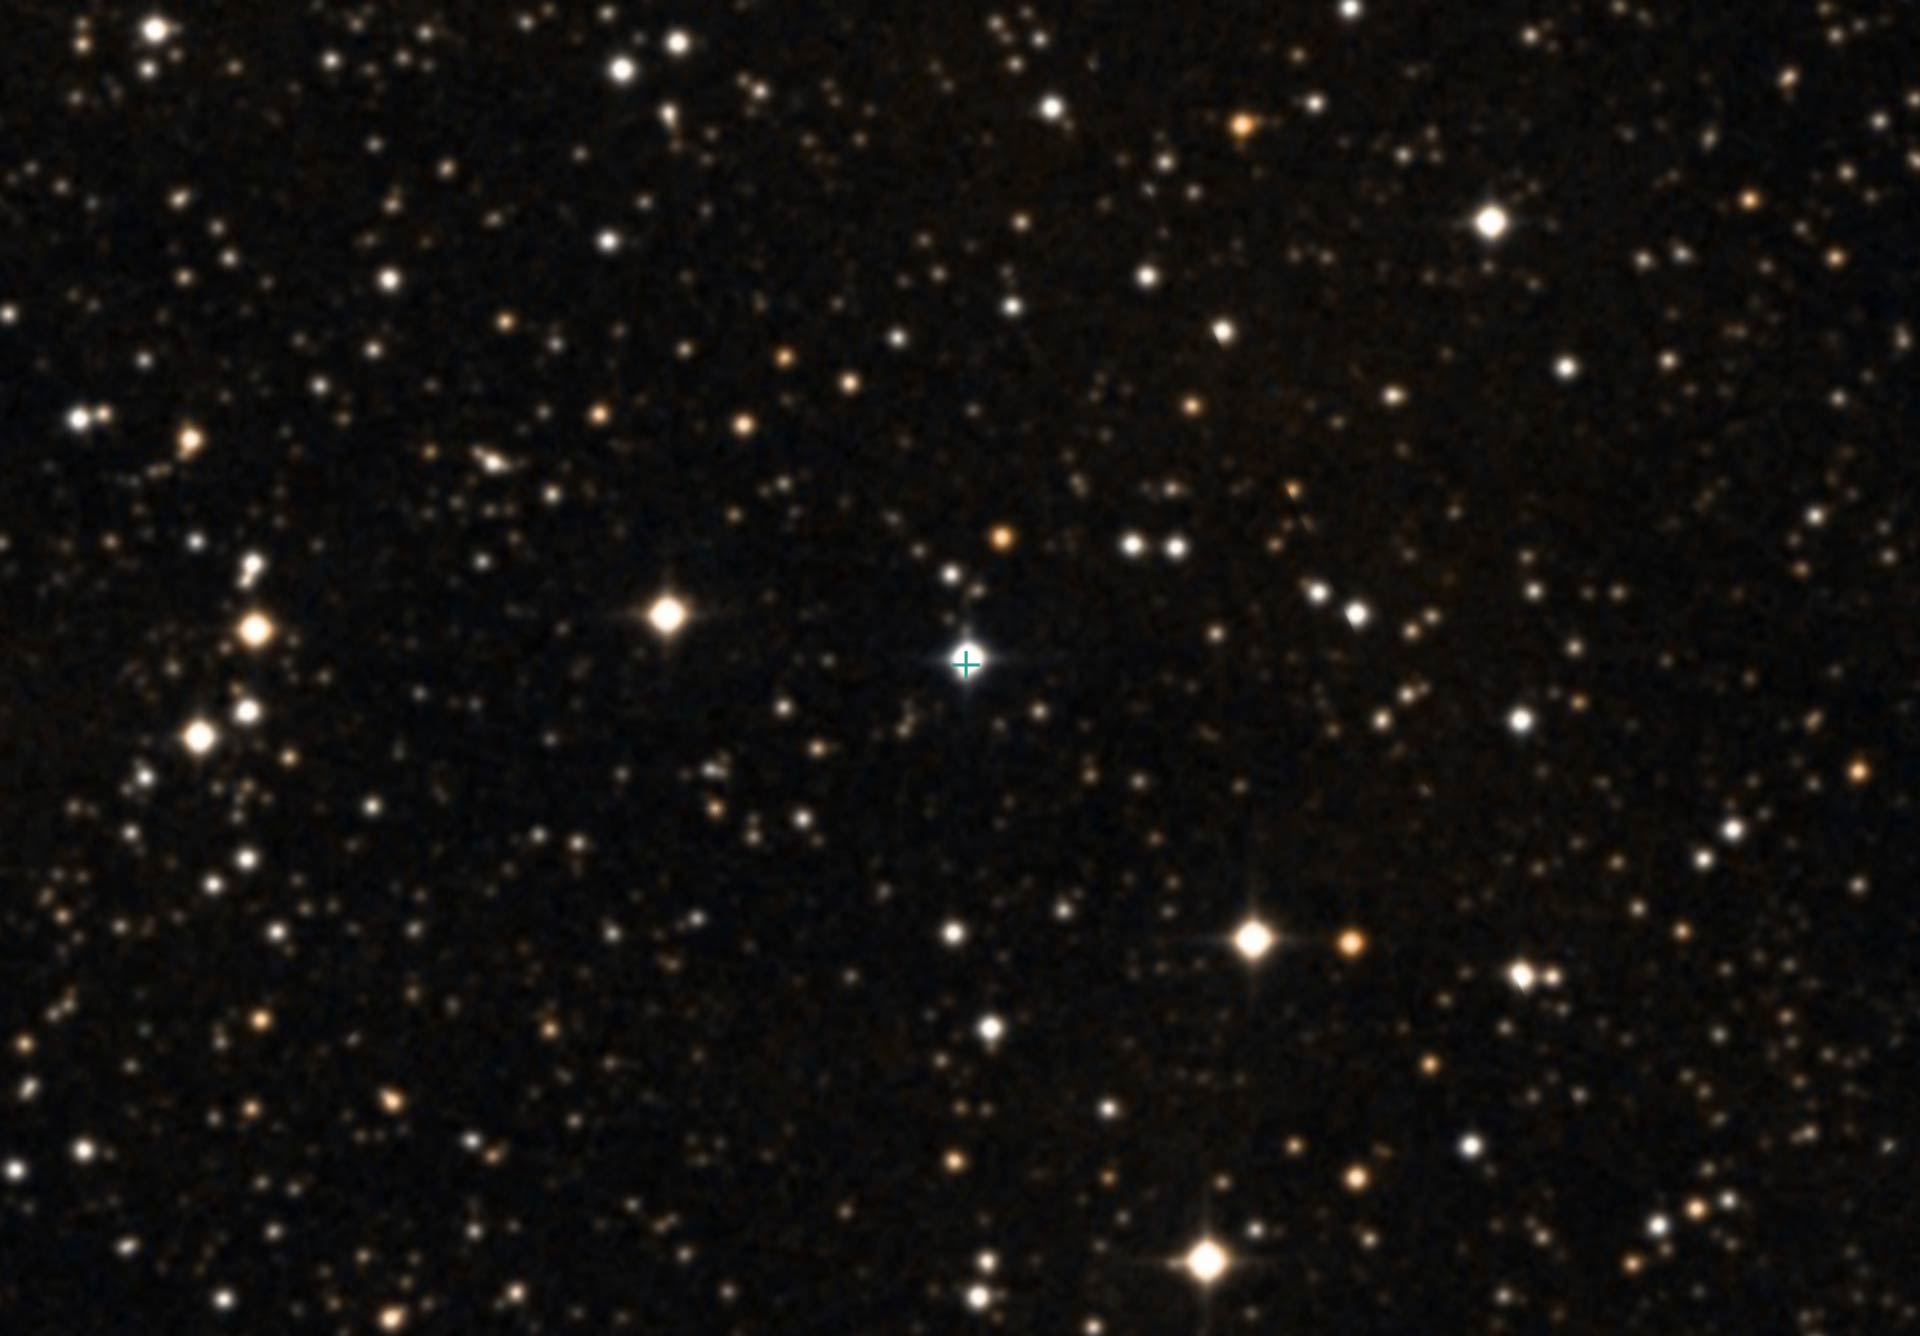 image_3463_2e-KIC-8462852